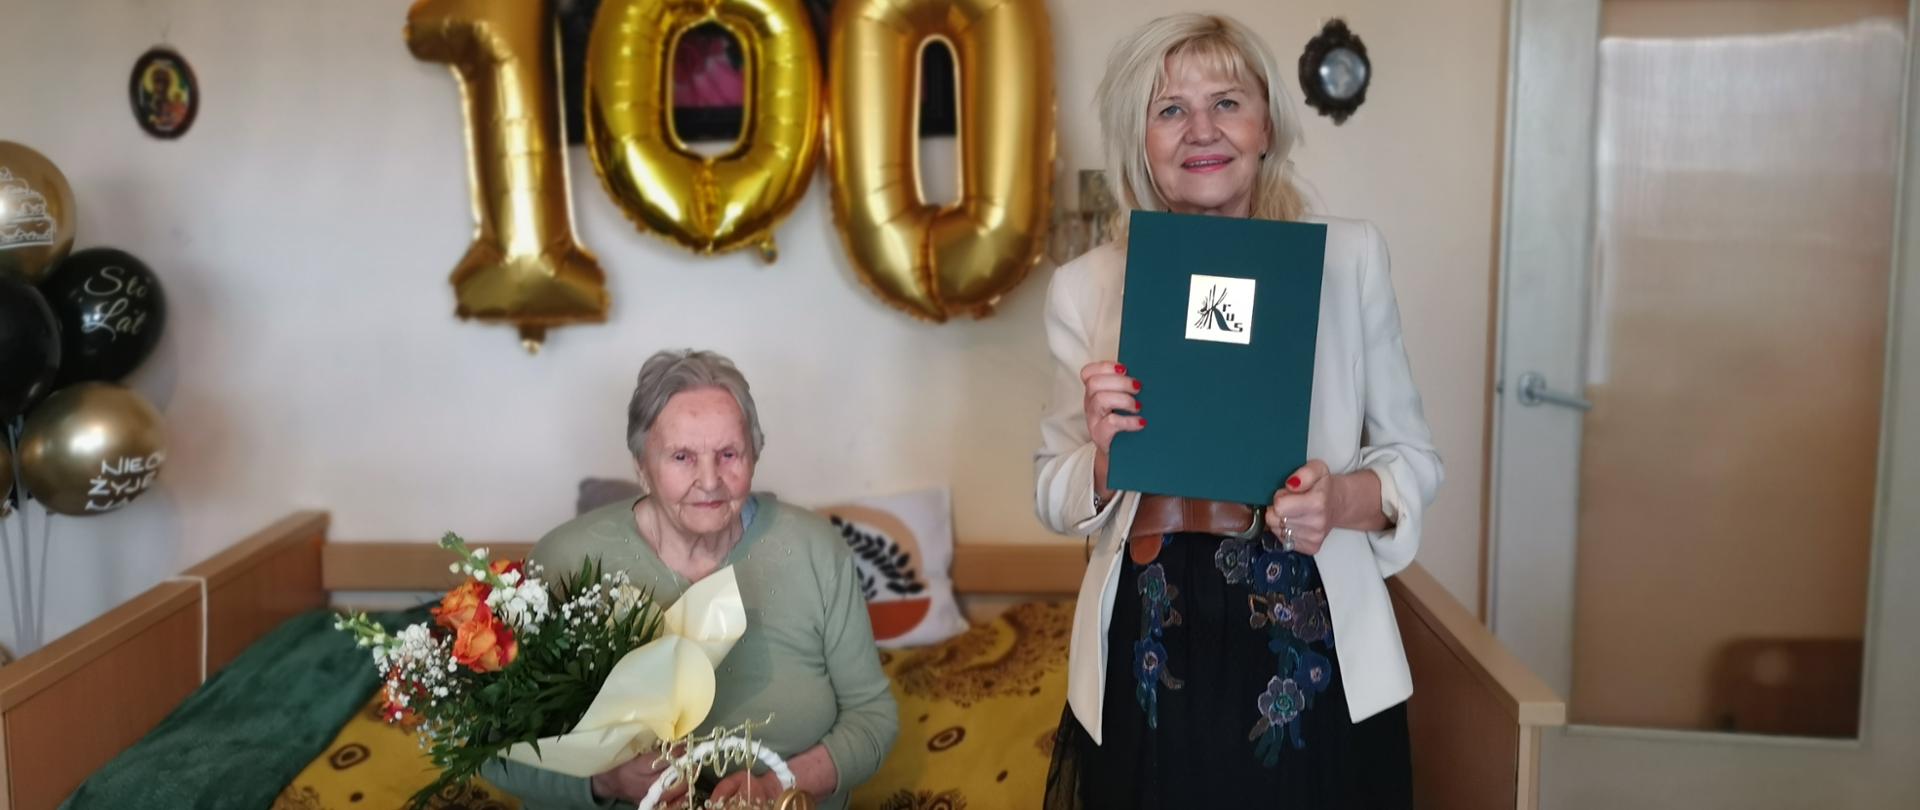 Po lewej Jubilatka z bukietem kwiatów siedzi przy stole obok stoi kobieta z dyplomem KRUS w dłoniach., z tyłu balony kształcie liczby 100.